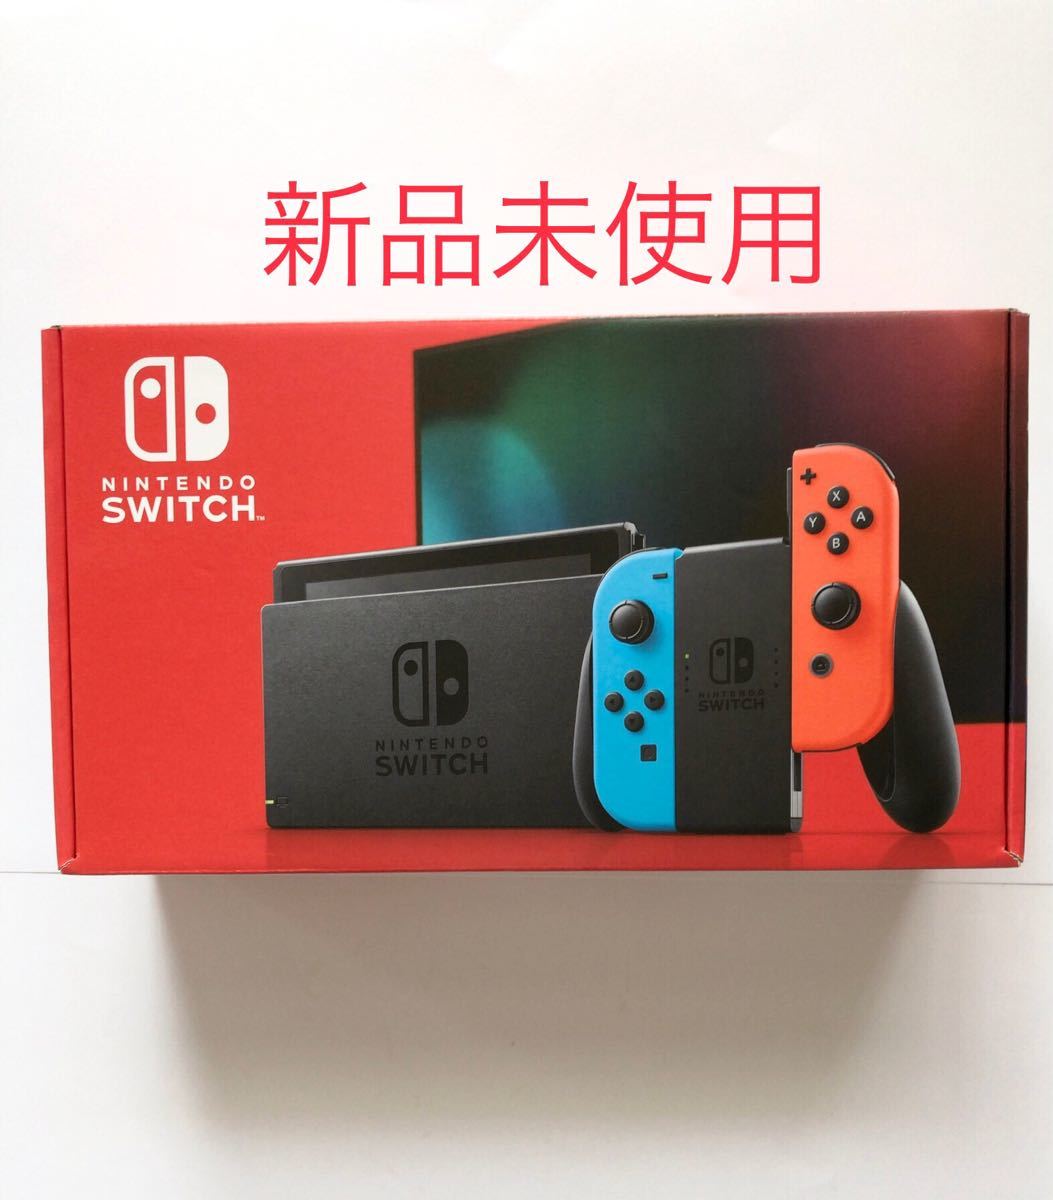 新品未使用正規品 Nintendo Switch スイッチ 本体のみ 新モデル